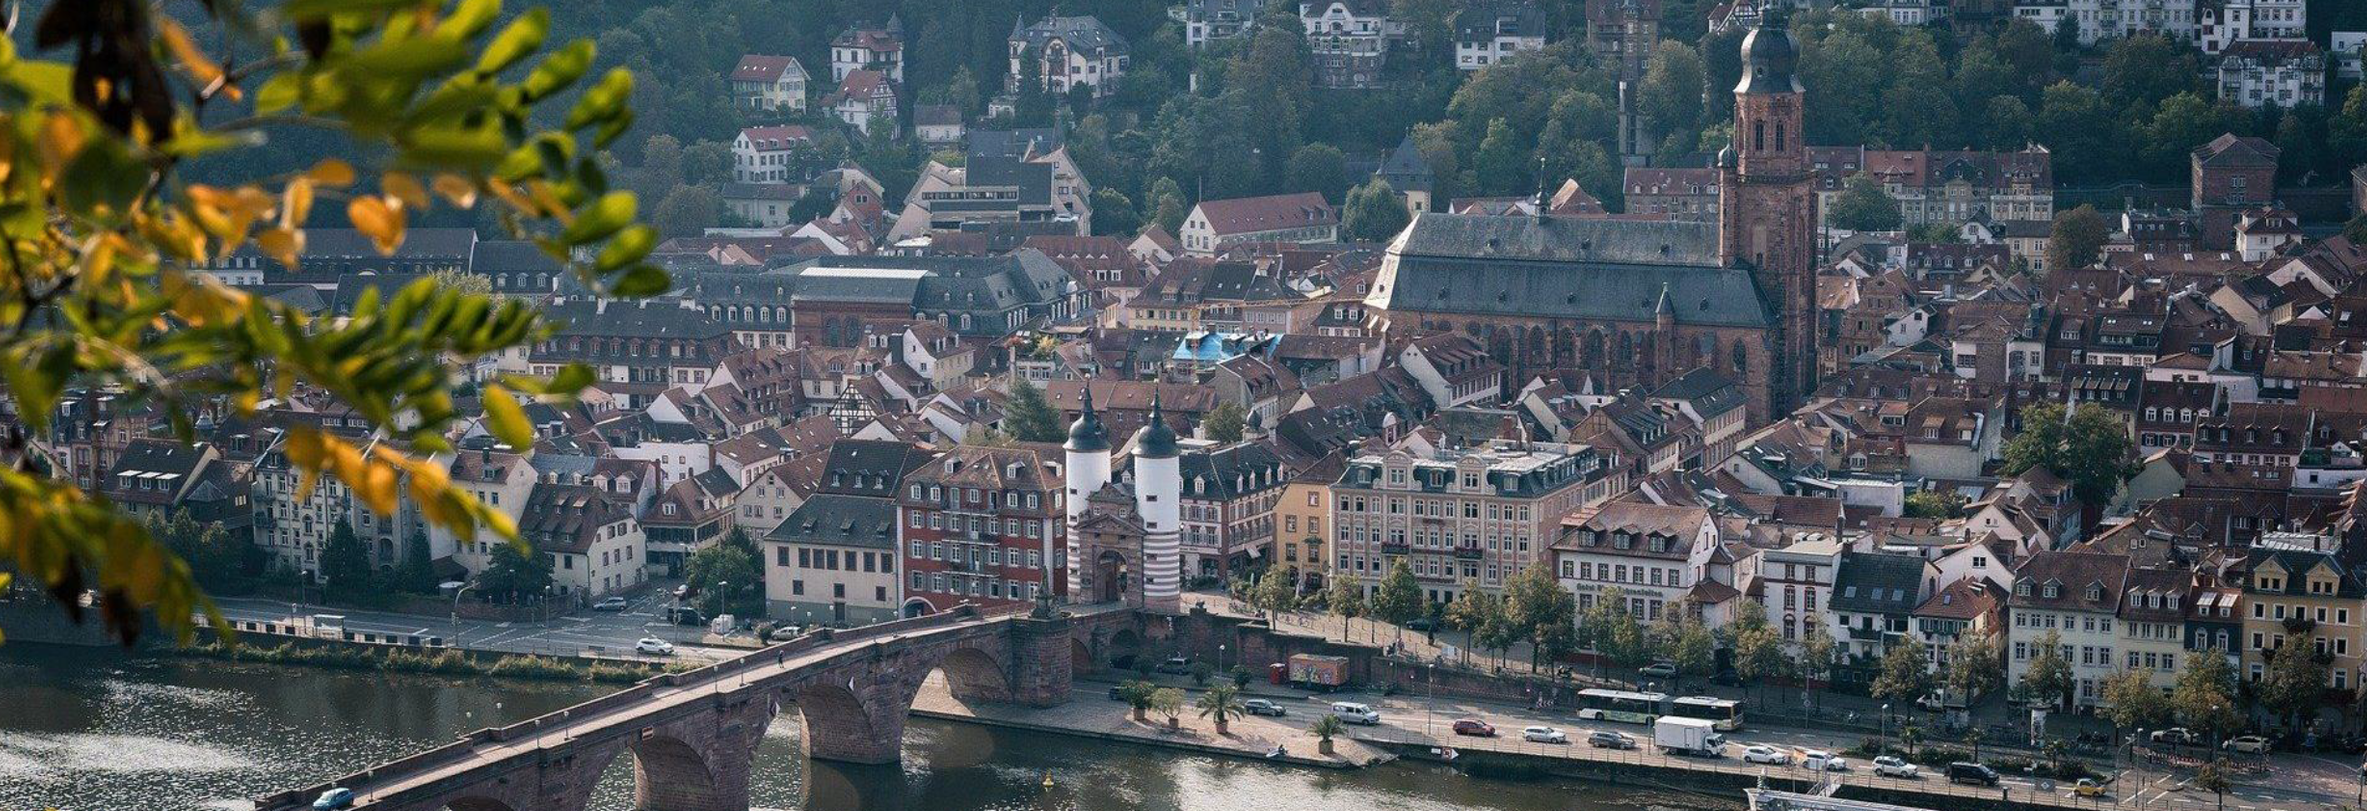 Heidelberg_11_7